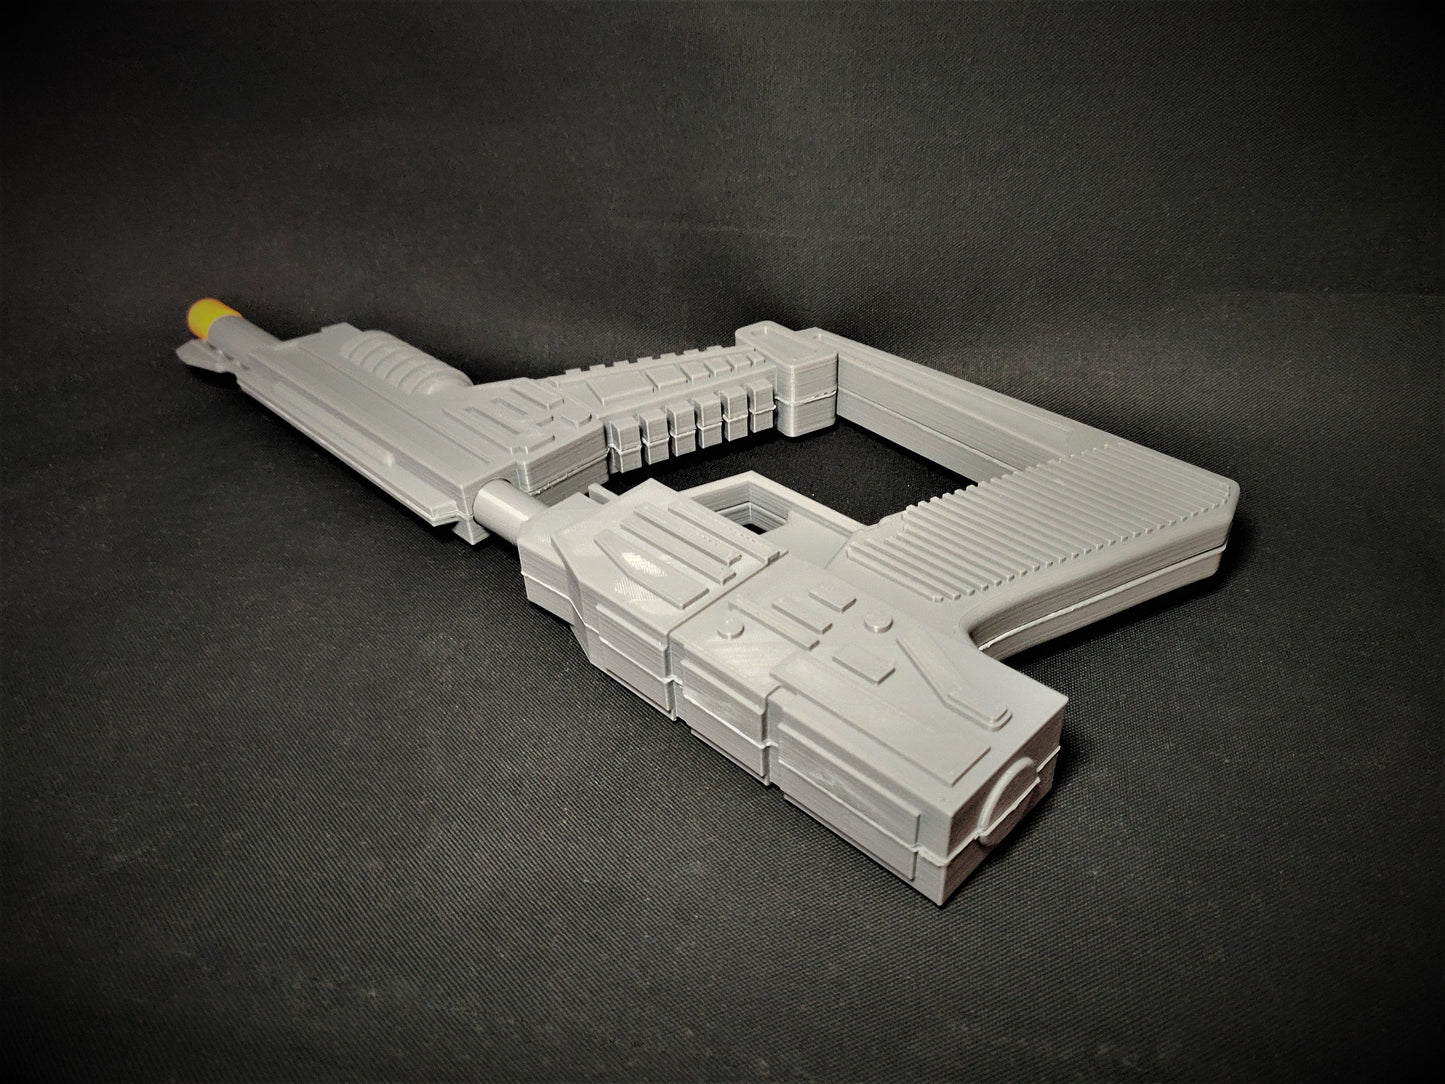 V-LASER - Sci-Fi Blaster - 3D Printed Replica